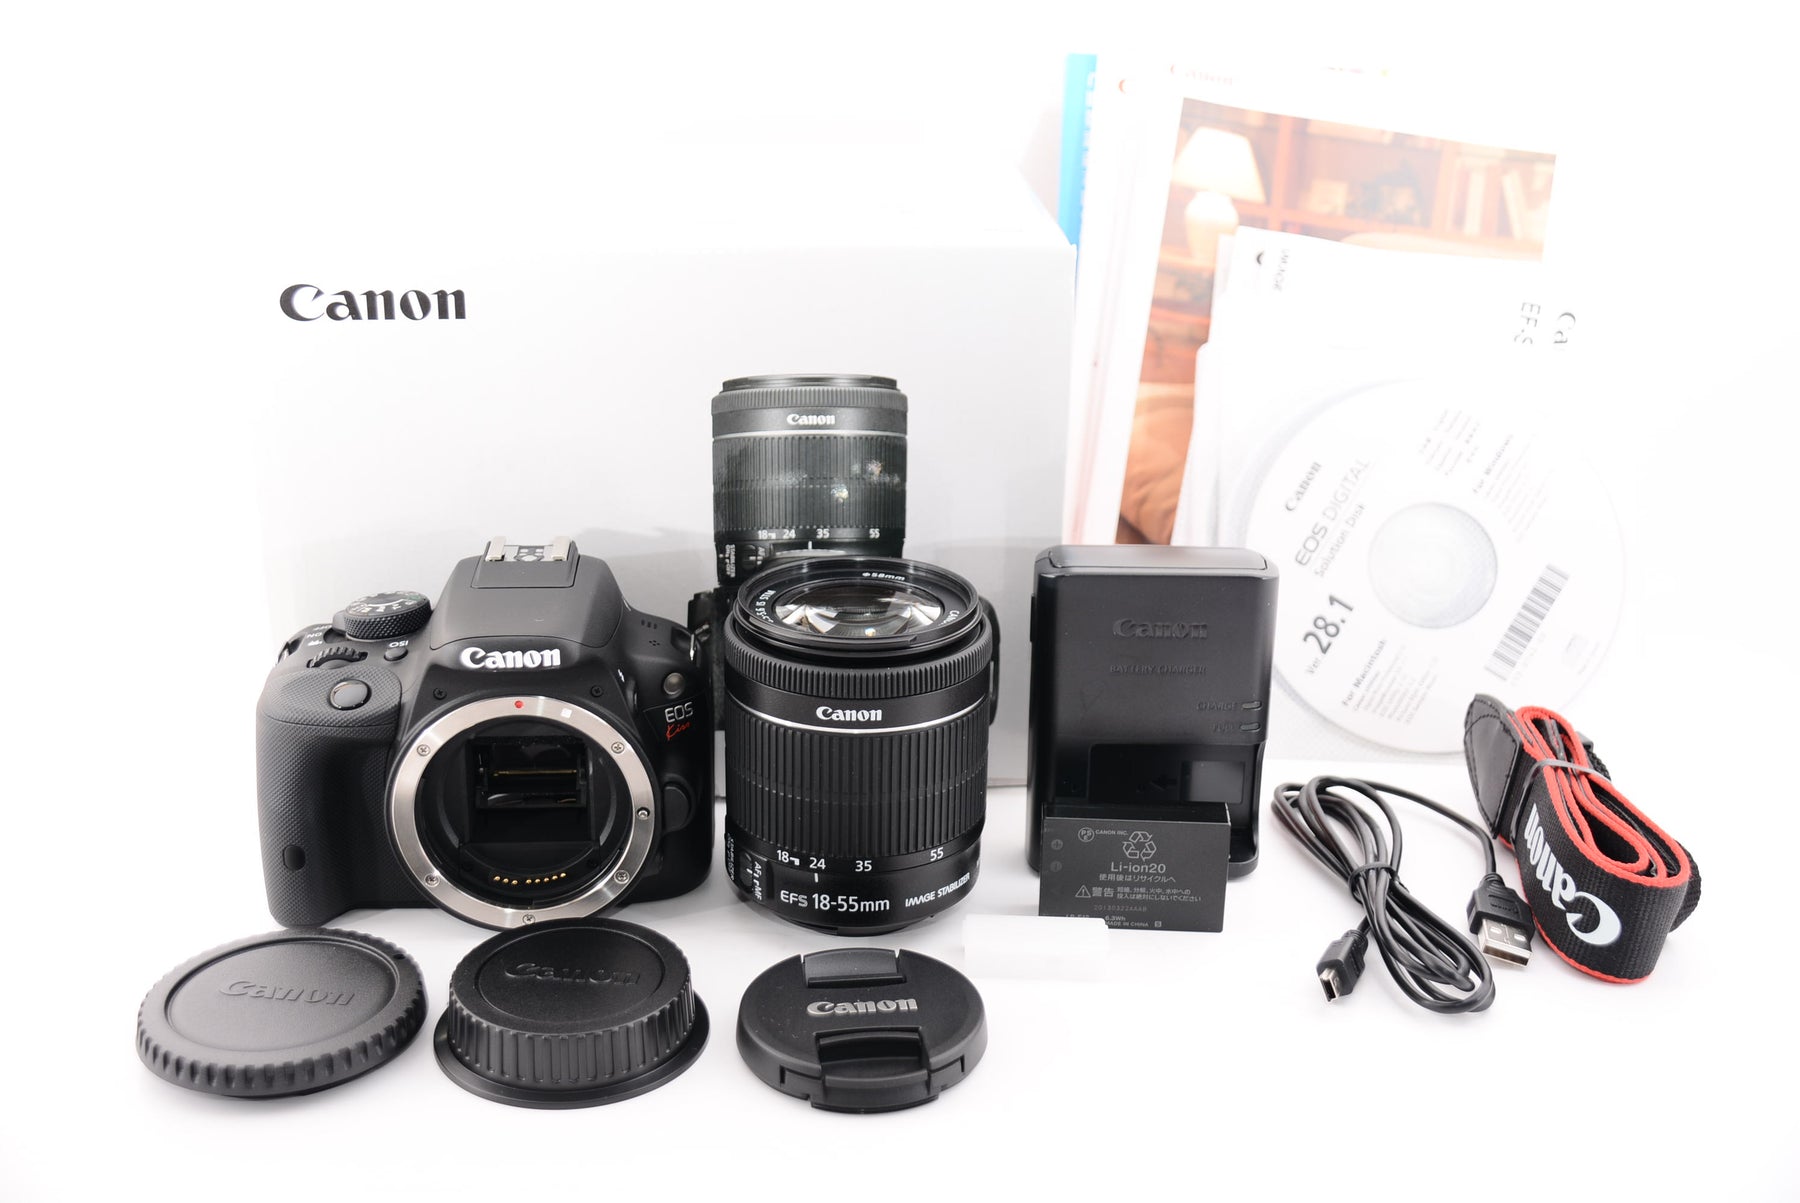 Canon デジタル一眼レフカメラ EOS Kiss X7 レンズキット EF-S18-55mm F3.5-5.6 IS STM付属 KISSX7-1 - 1